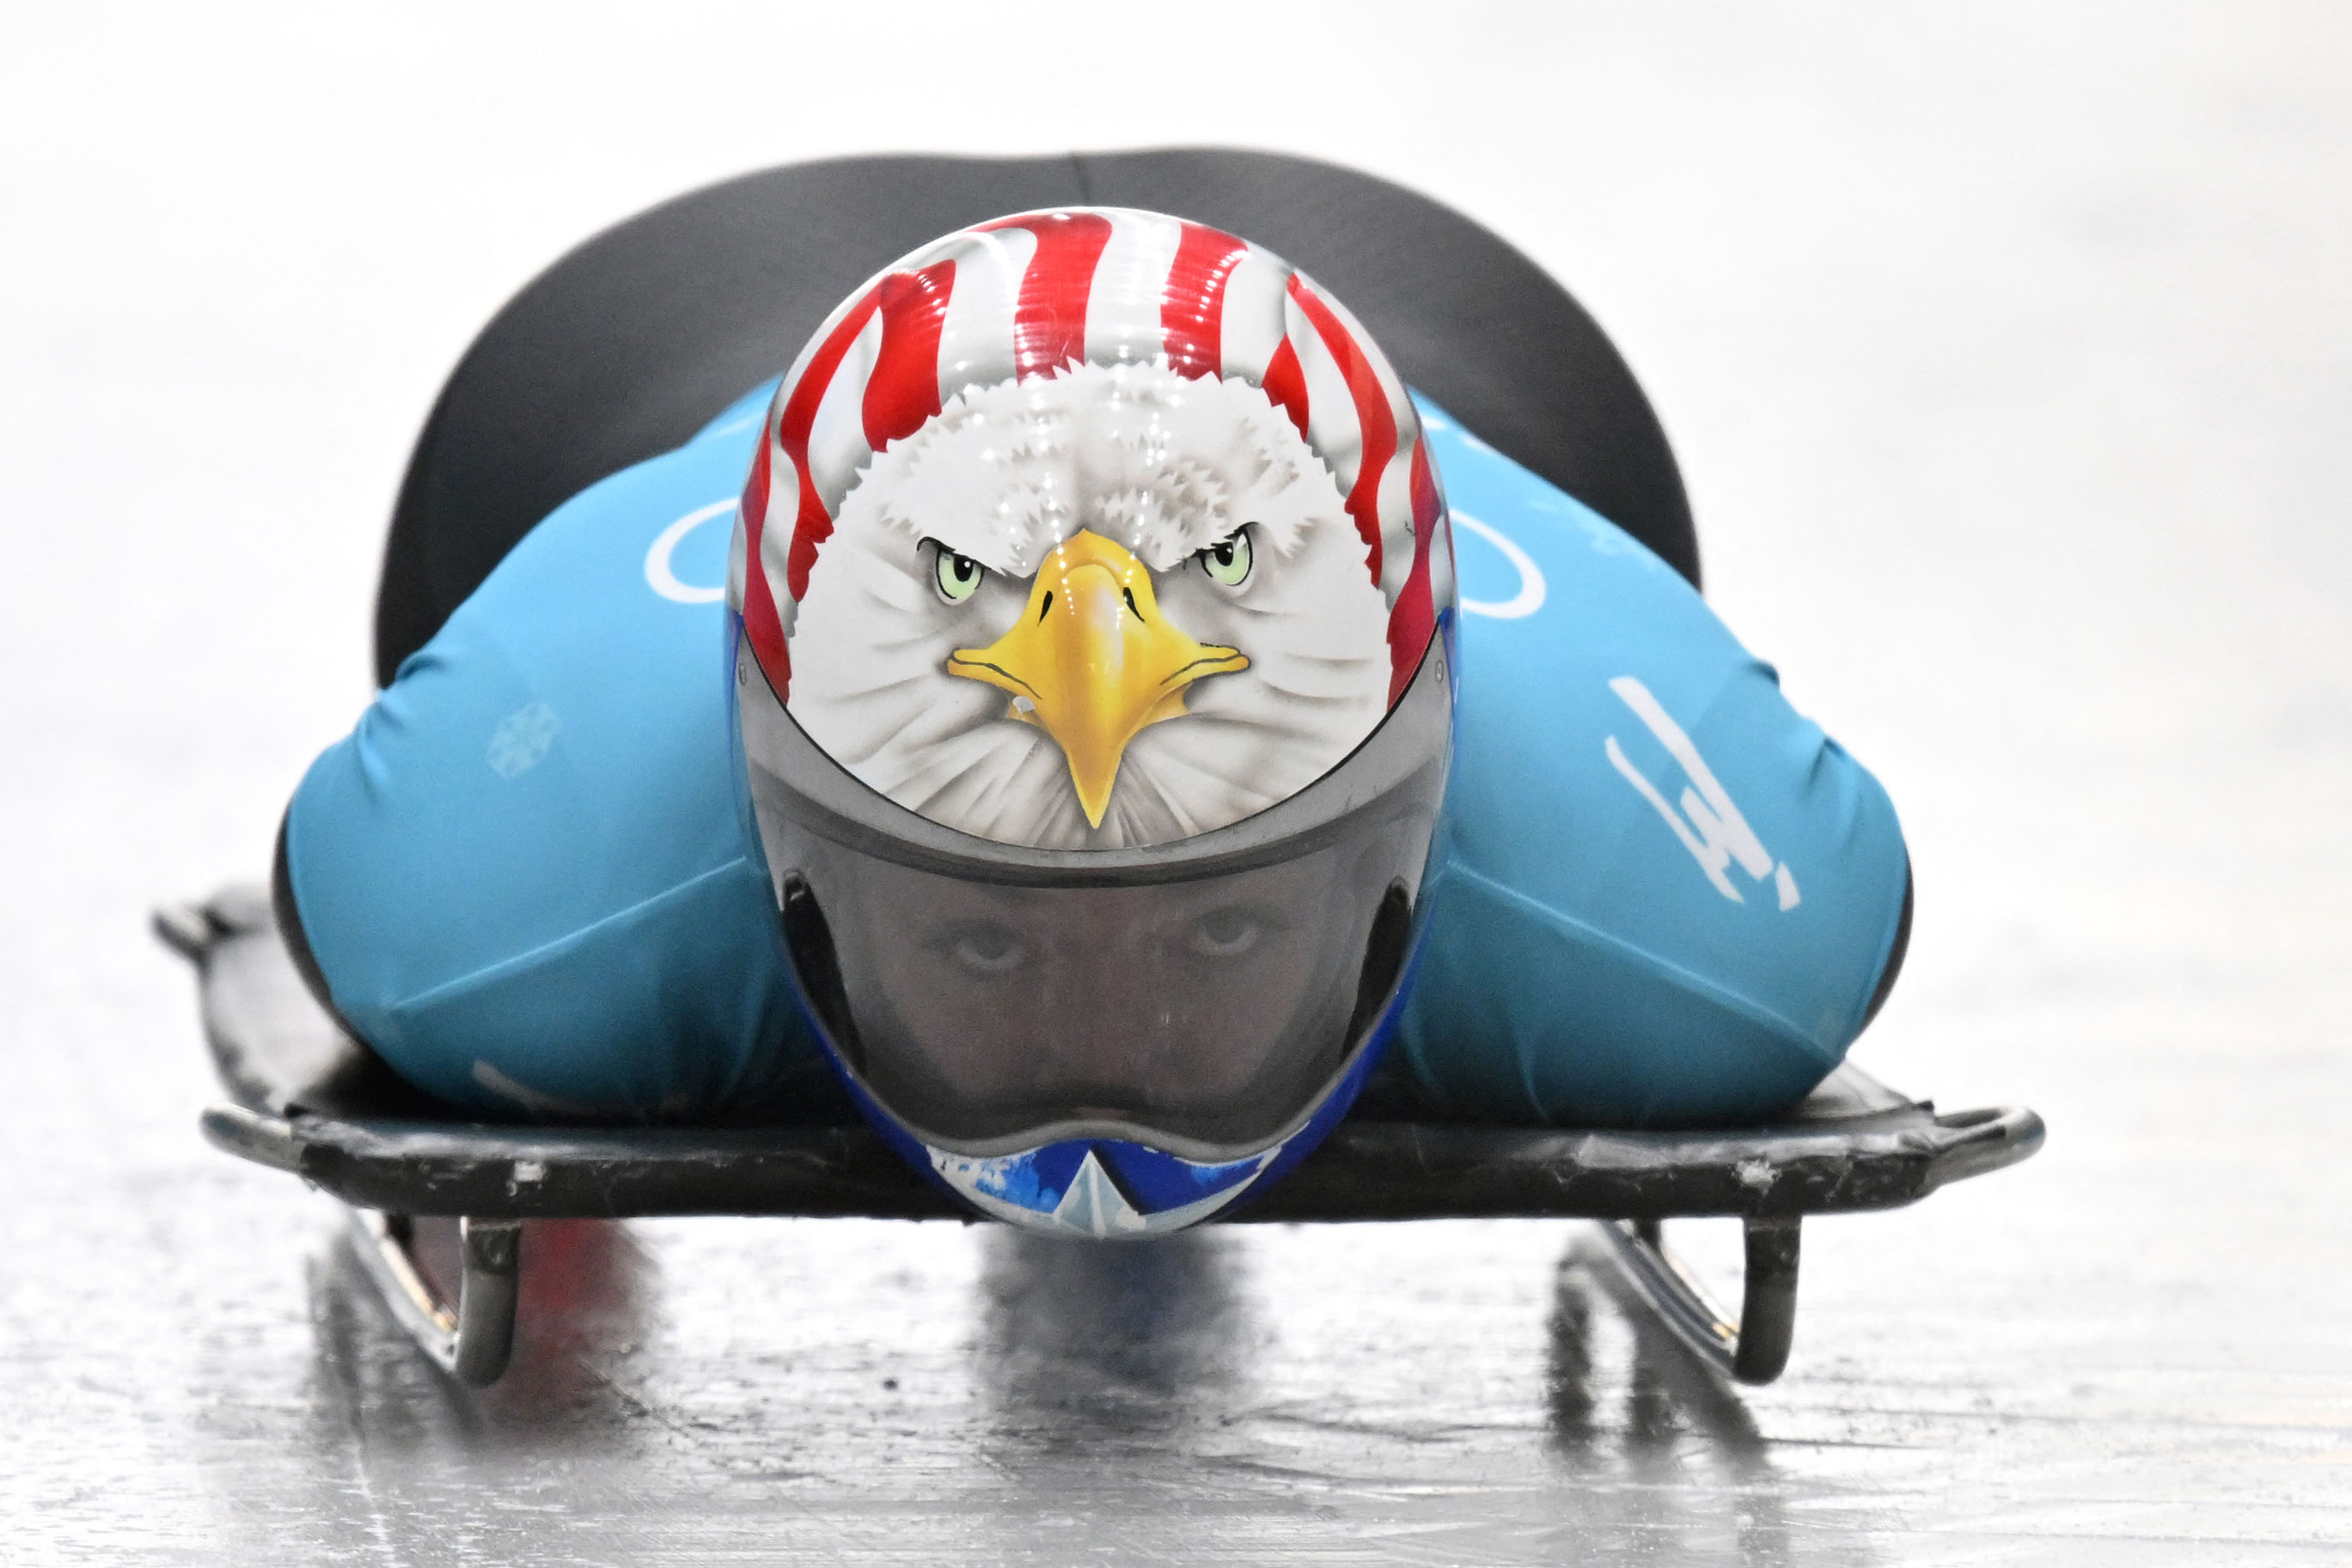 American Katie Uhlaender's patriotic eagle flies high in our style rankings.